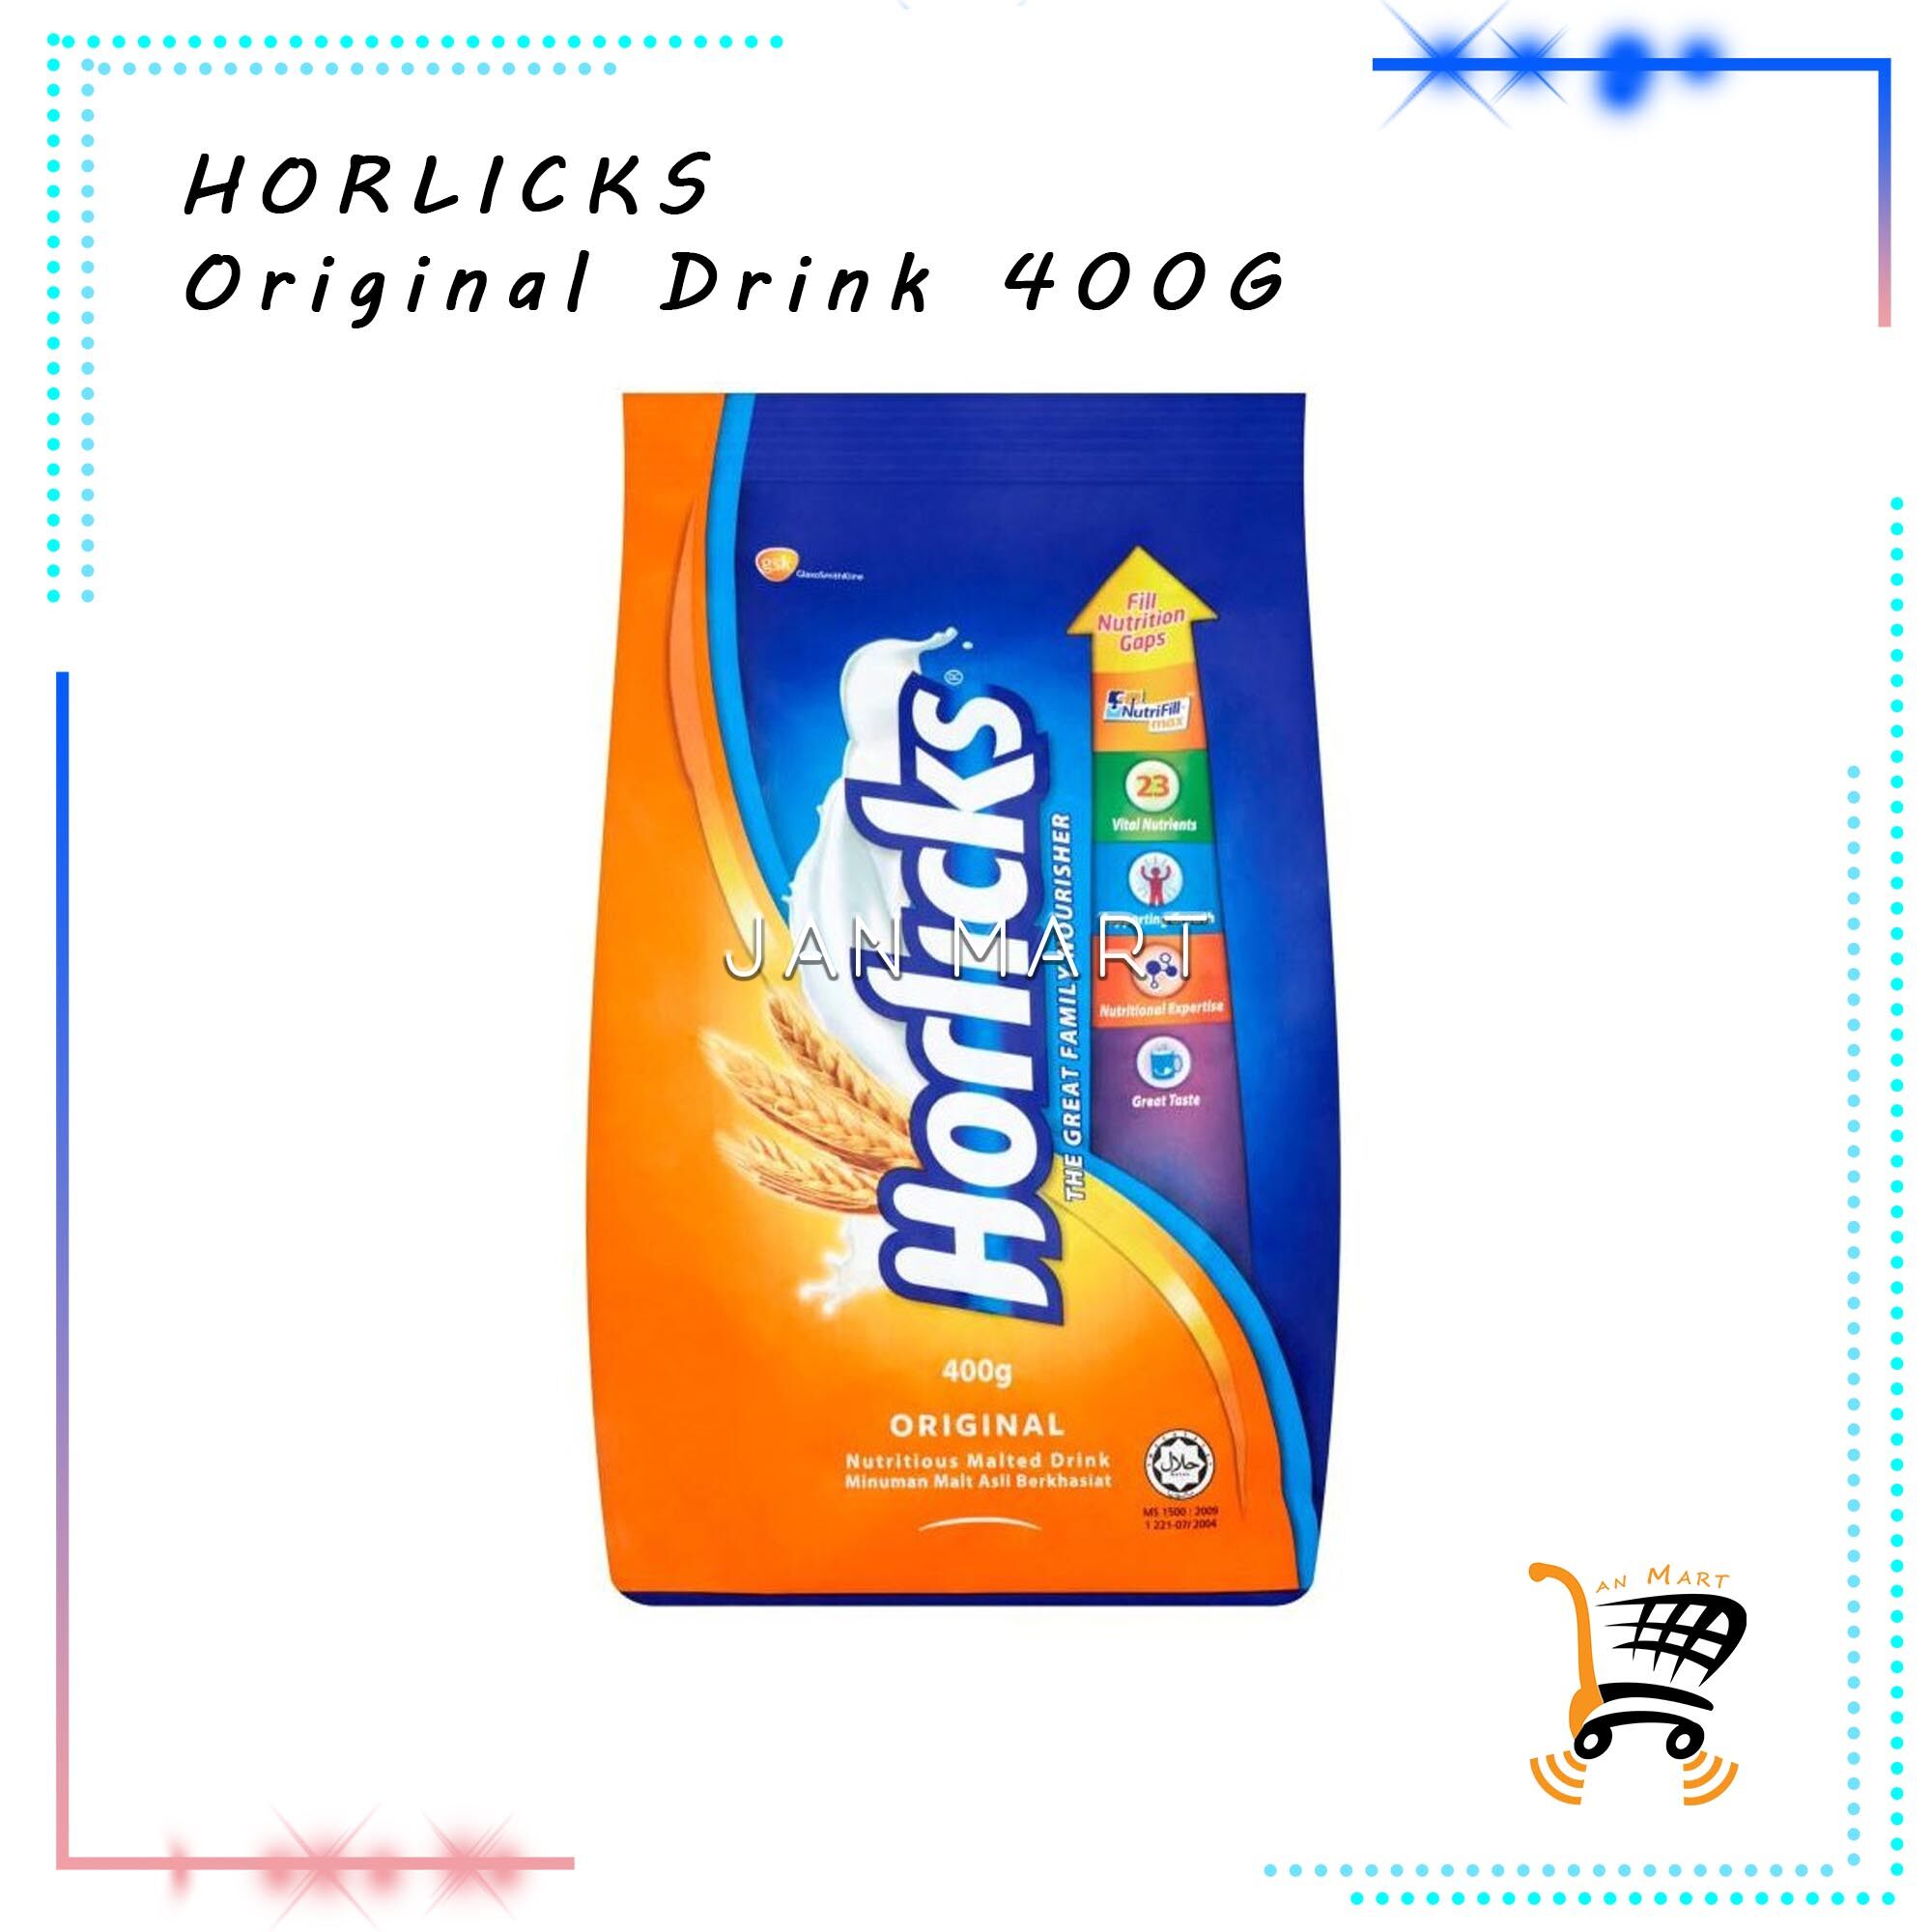 HORLICKS Refill Pack Original Drink 400G